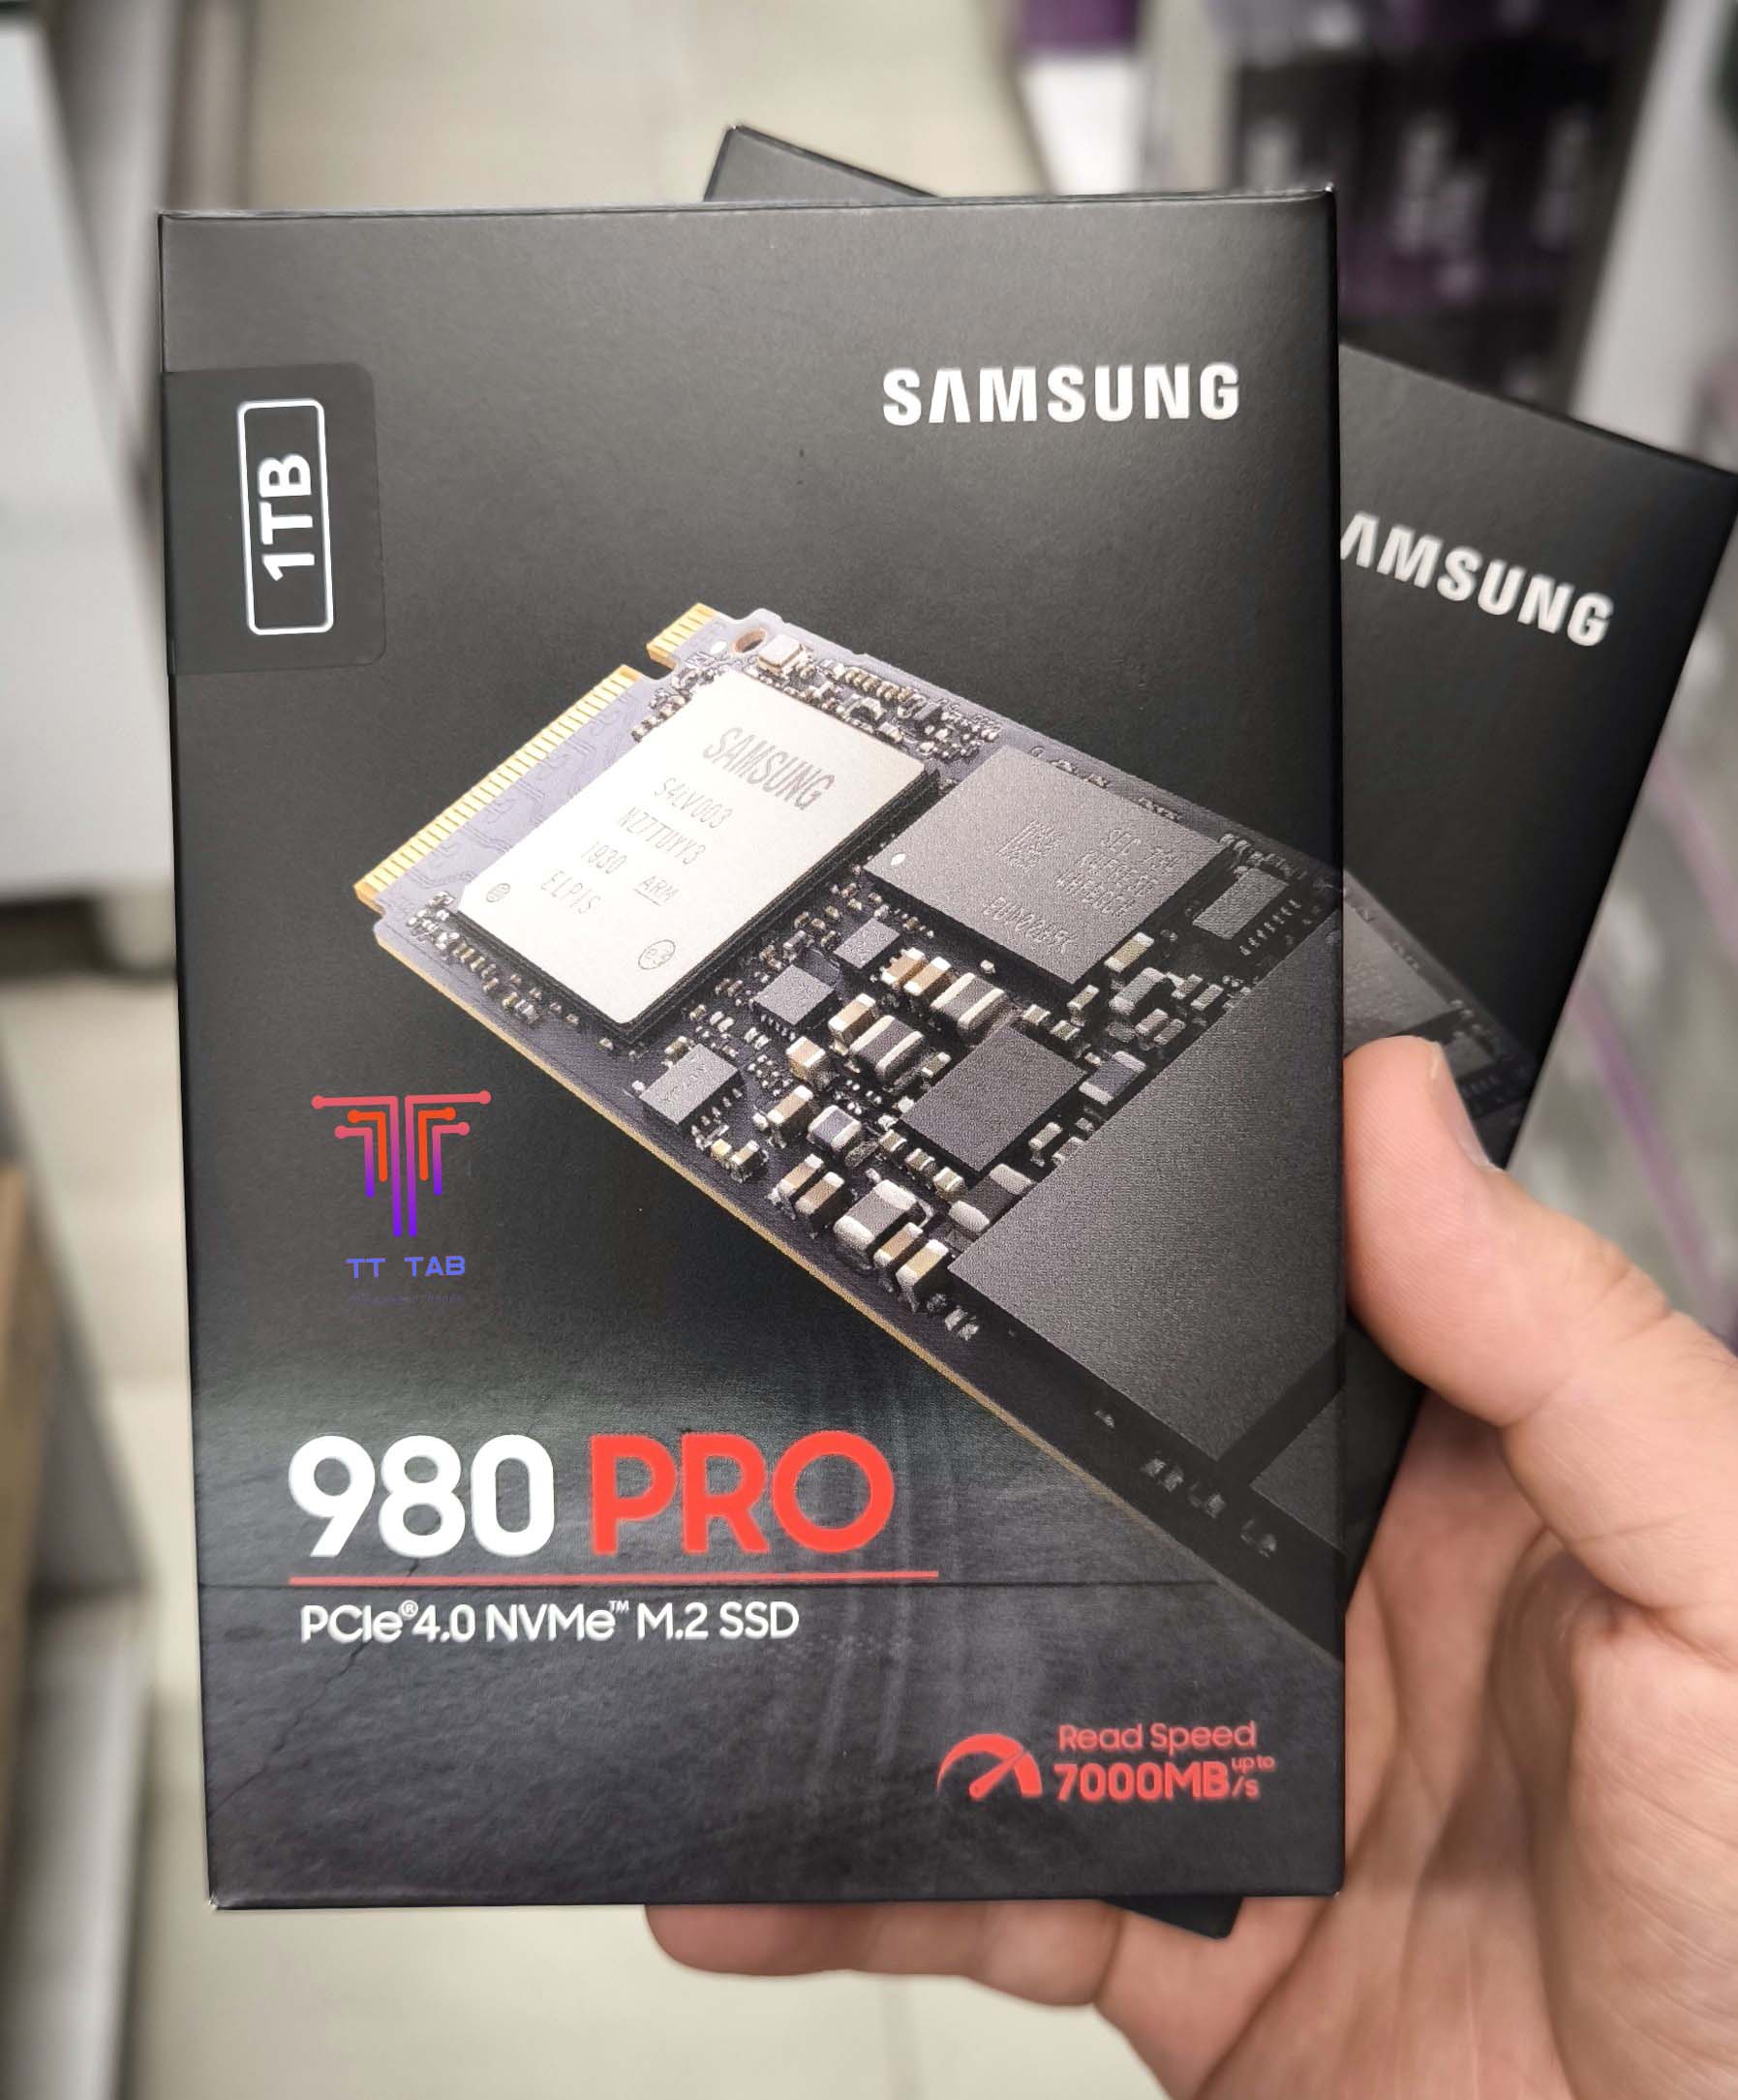 Samsung 980 Pro SSD NVMe Gen4 with DRAM